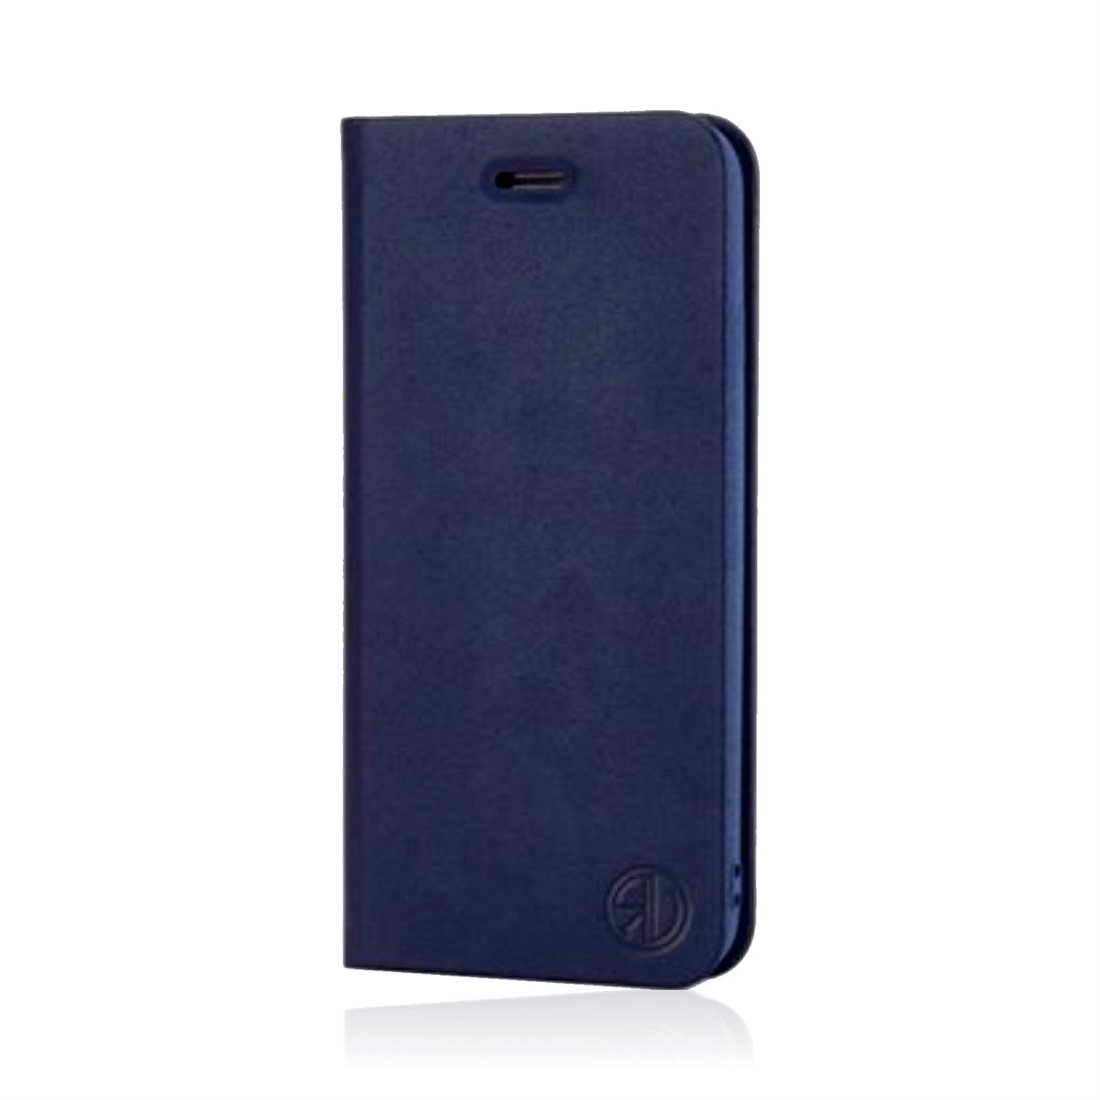 Magnetic Bookcase iPhone 7/8 Plus dark blue